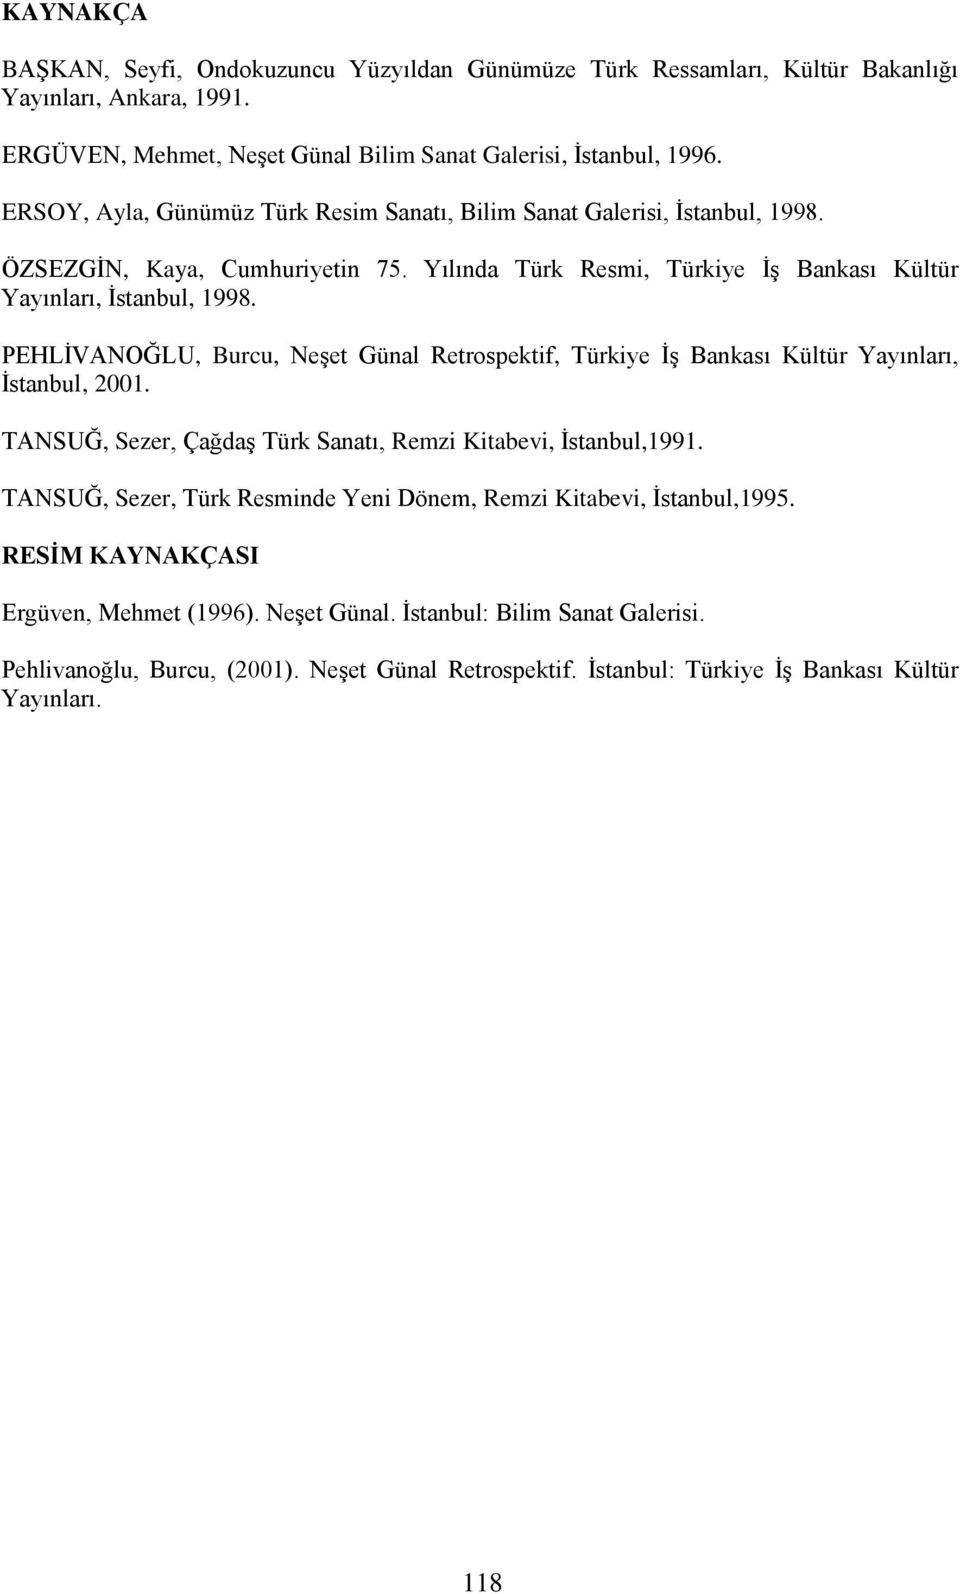 PEHLİVANOĞLU, Burcu, Neşet Günal Retrospektif, Türkiye İş Bankası Kültür Yayınları, İstanbul, 2001. TANSUĞ, Sezer, Çağdaş Türk Sanatı, Remzi Kitabevi, İstanbul,1991.